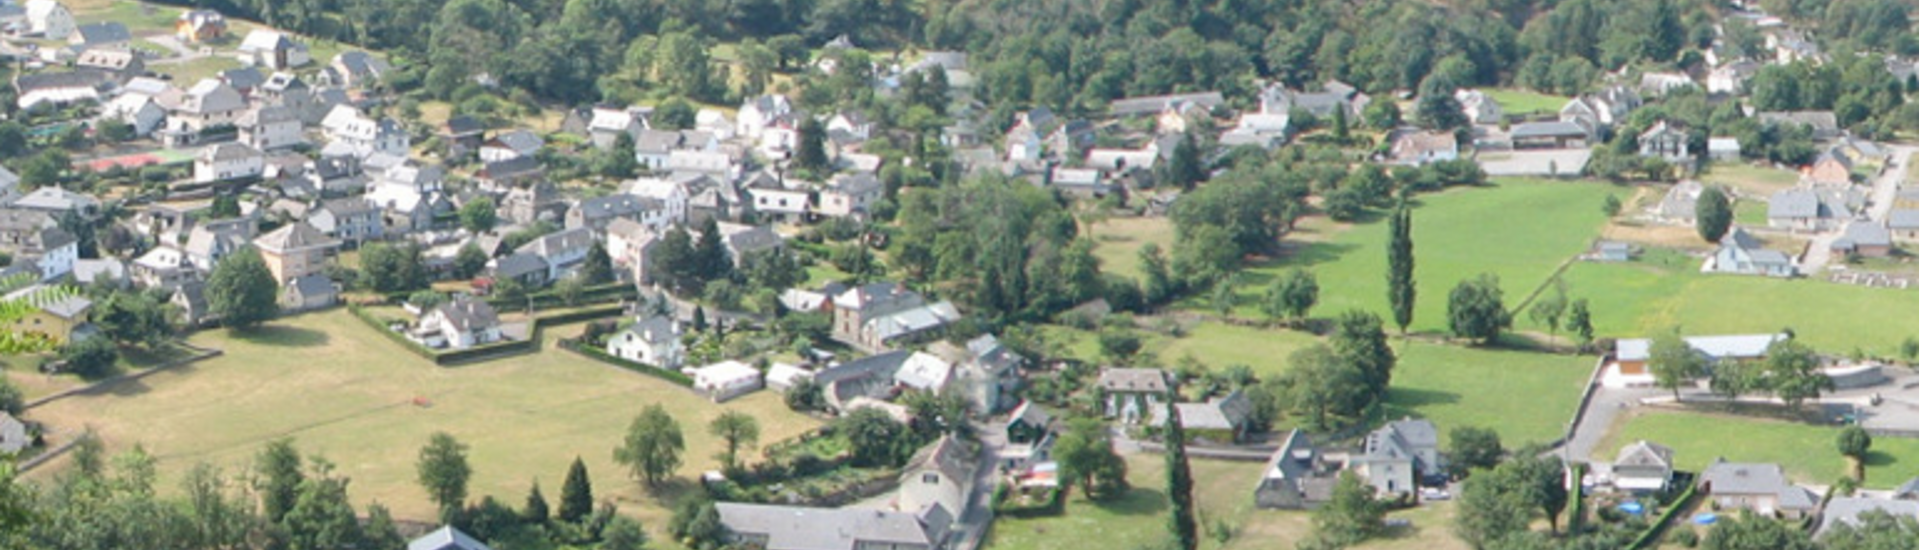 sainte-agathe-commune-de-villelongue